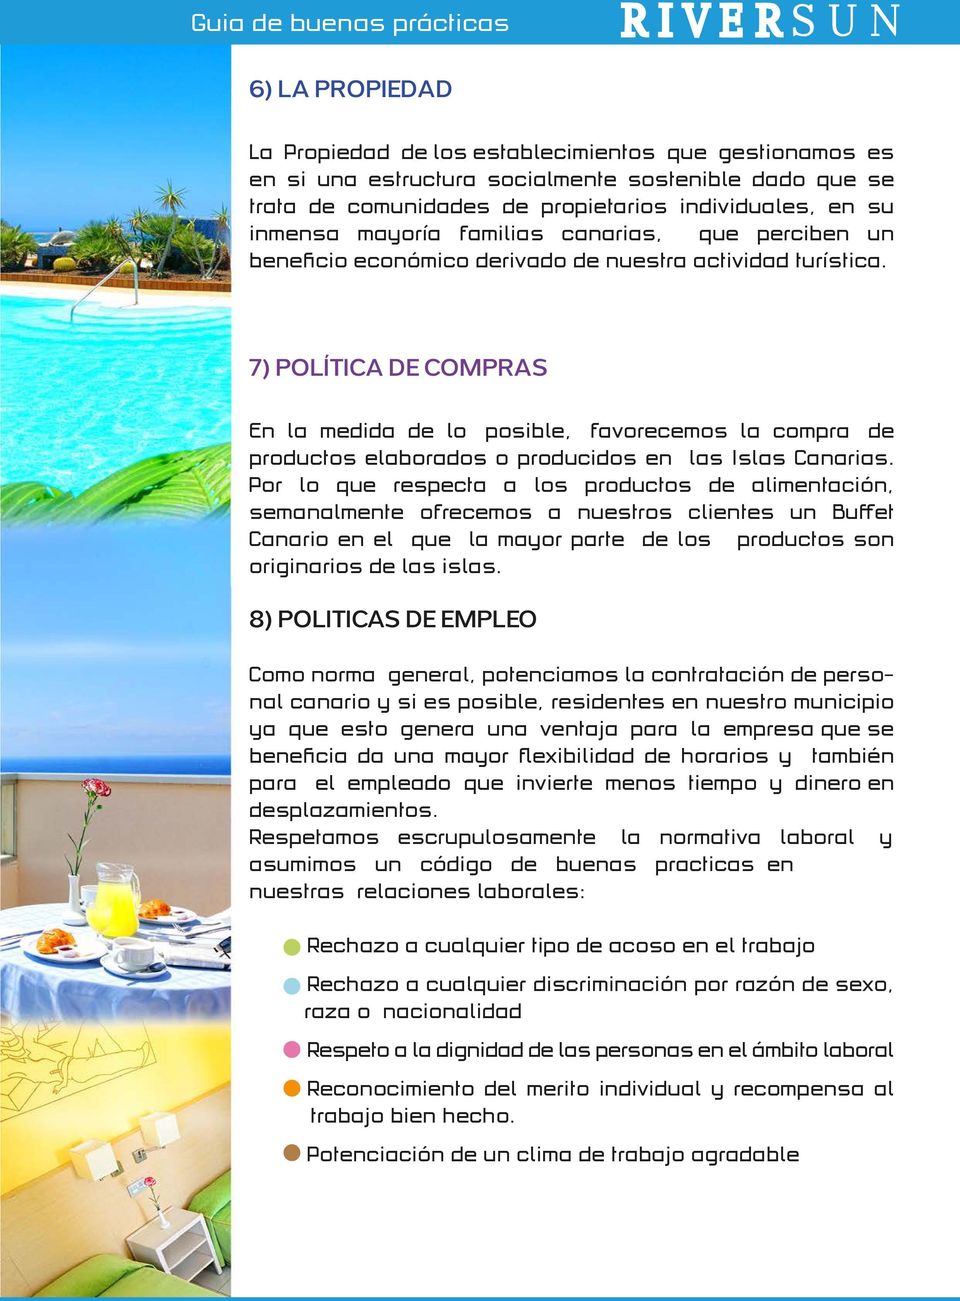 7) POLÍTICA DE COMPRAS En la medida de lo posible, favorecemos la compra de productos elaborados o producidos en las Islas Canarias.